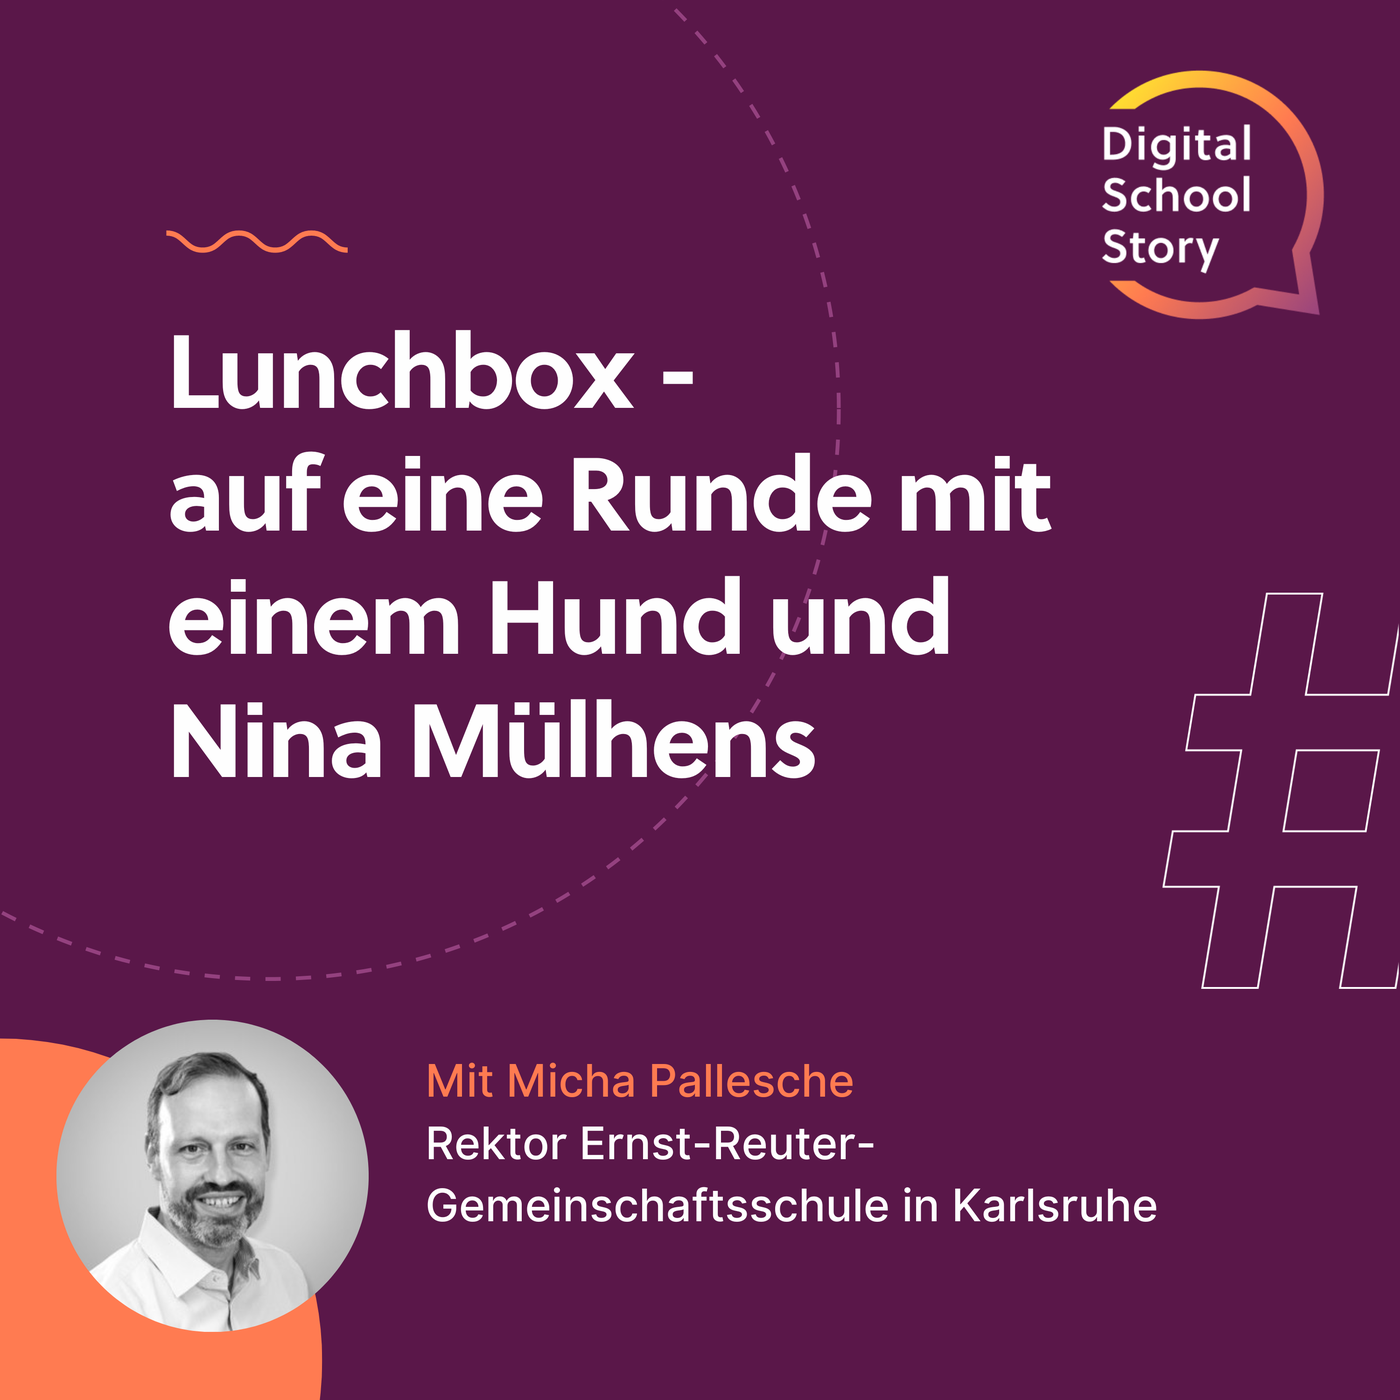 #19 Micha Pallesche bei der #lunchbox